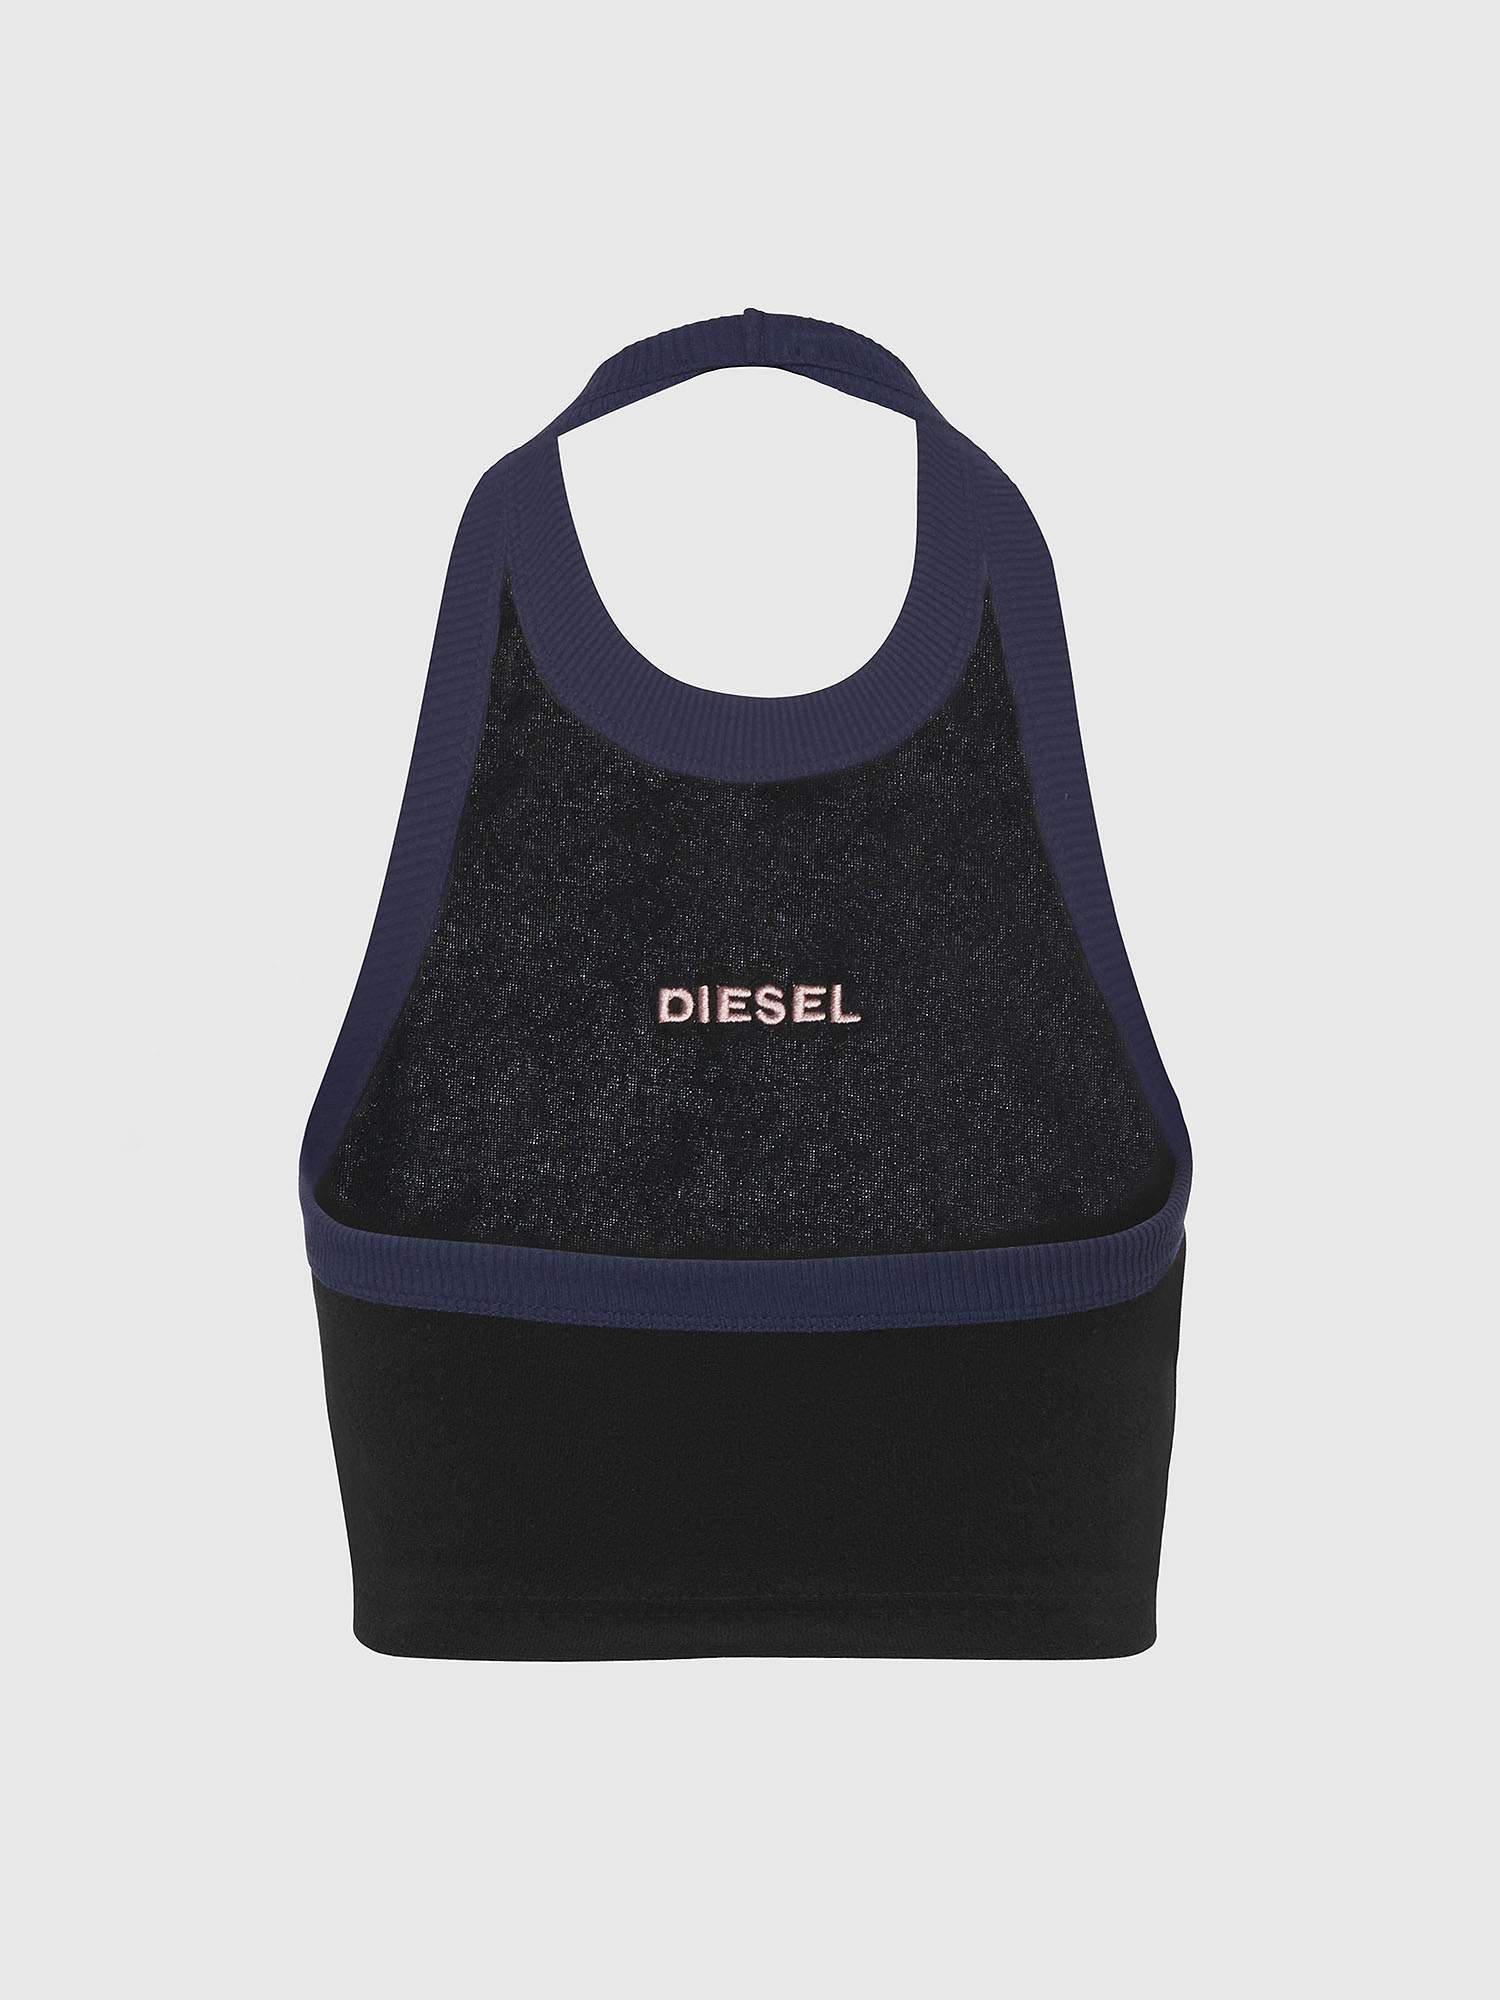 Diesel - UFTK-ASHLY, Black - Image 2